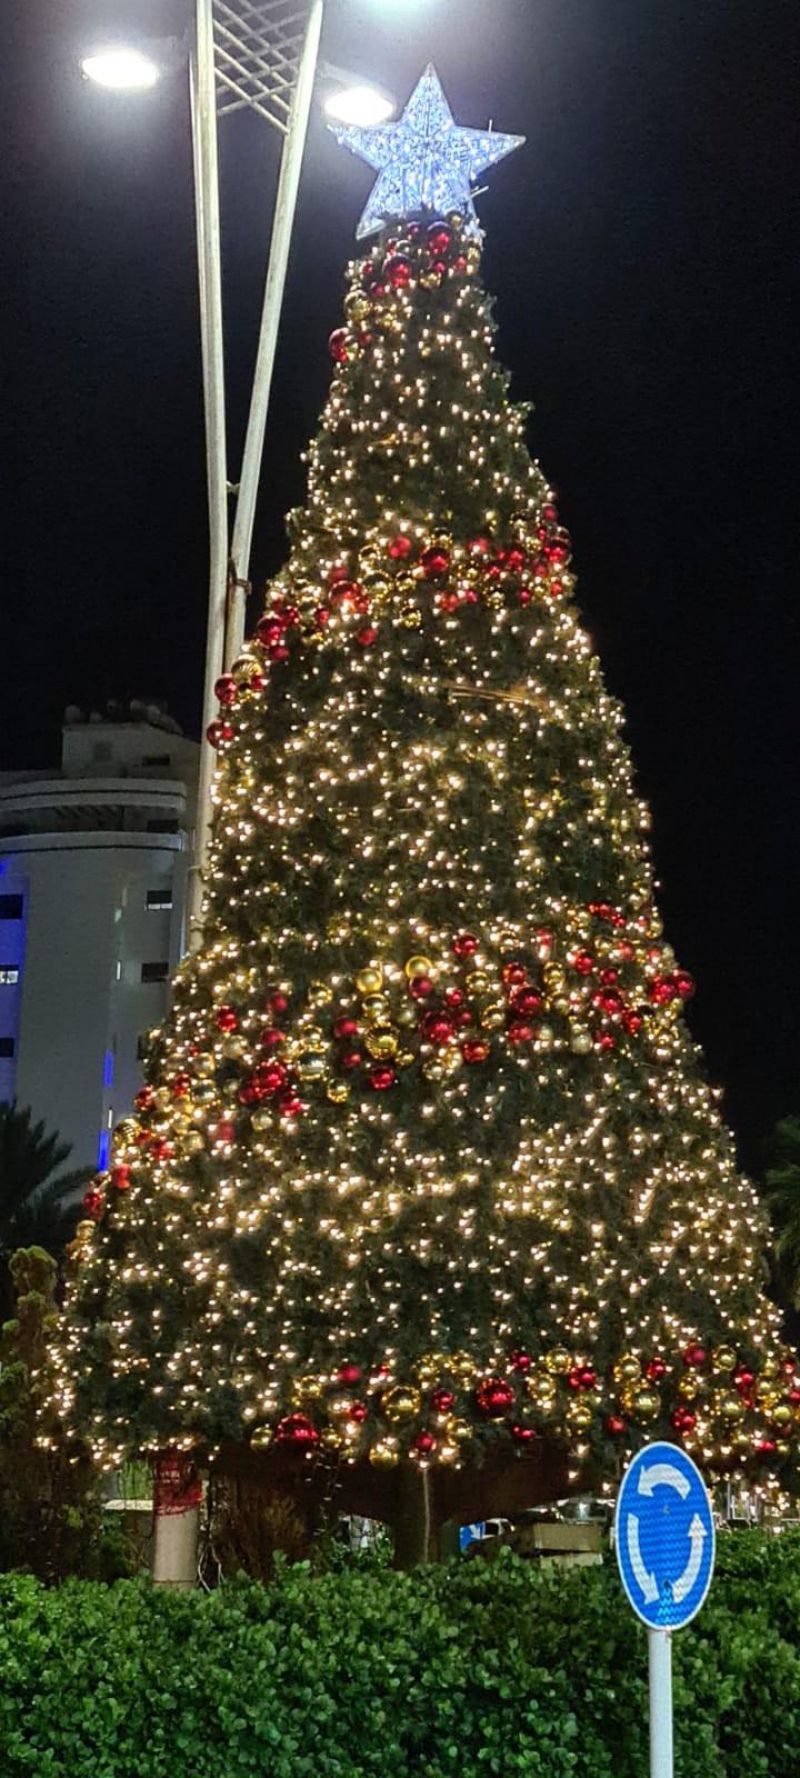 المراكز الجماهيرية- أسوار عكا تبادر إلى إضاءة شجرة الميلاد السنوية في المدينة